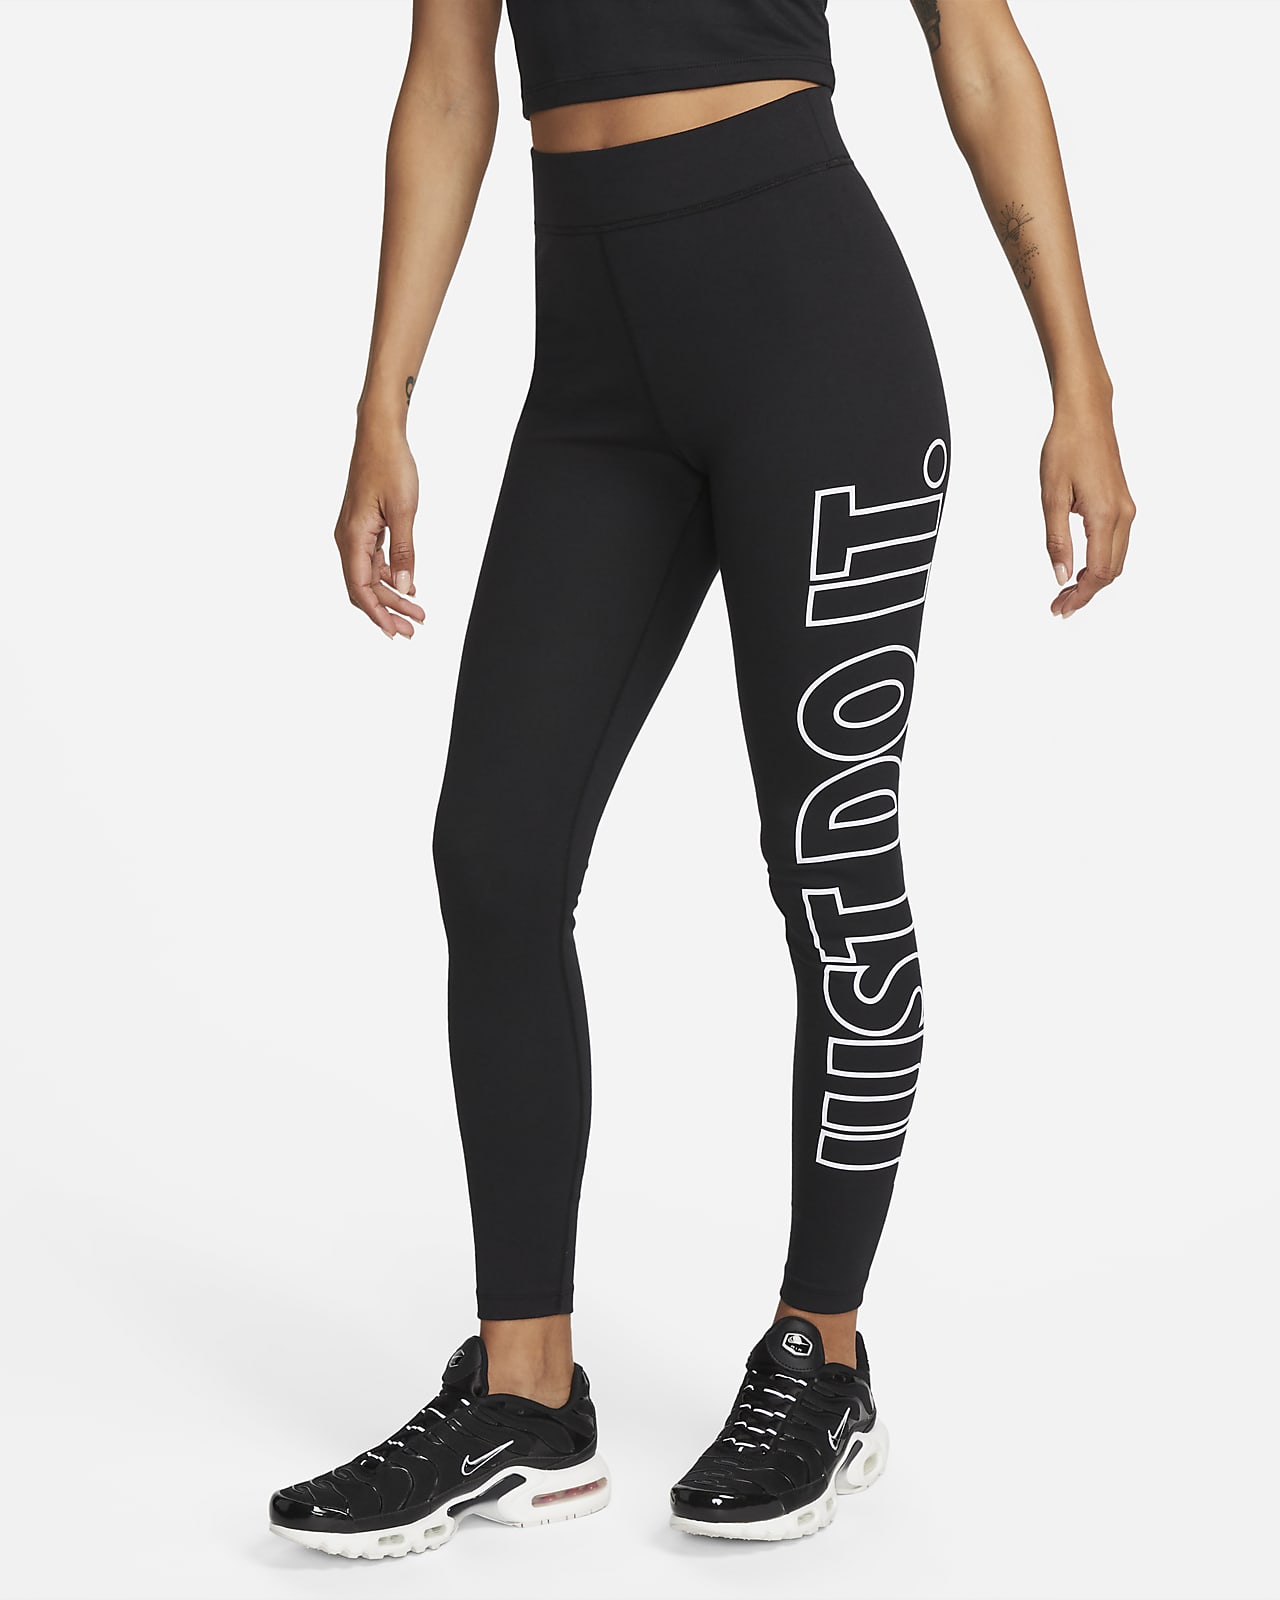 Nike Women's Sportswear Just Do It leggings Black Sizes L XL RRP £40